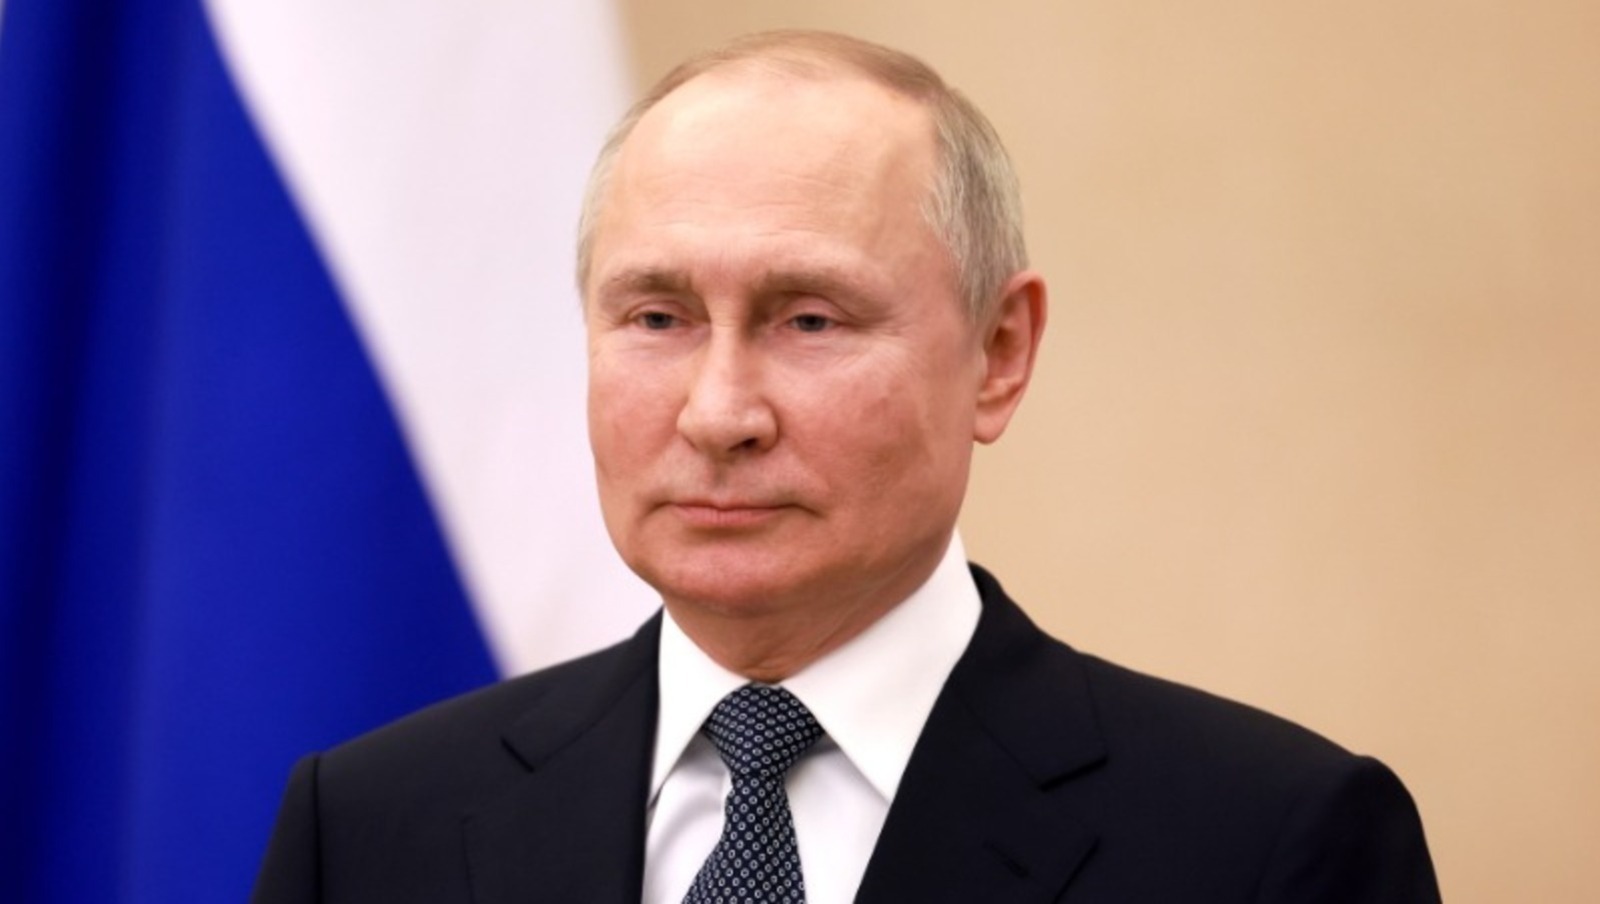 Владимир Путин подписал ряд новых федеральных законов - самое важное